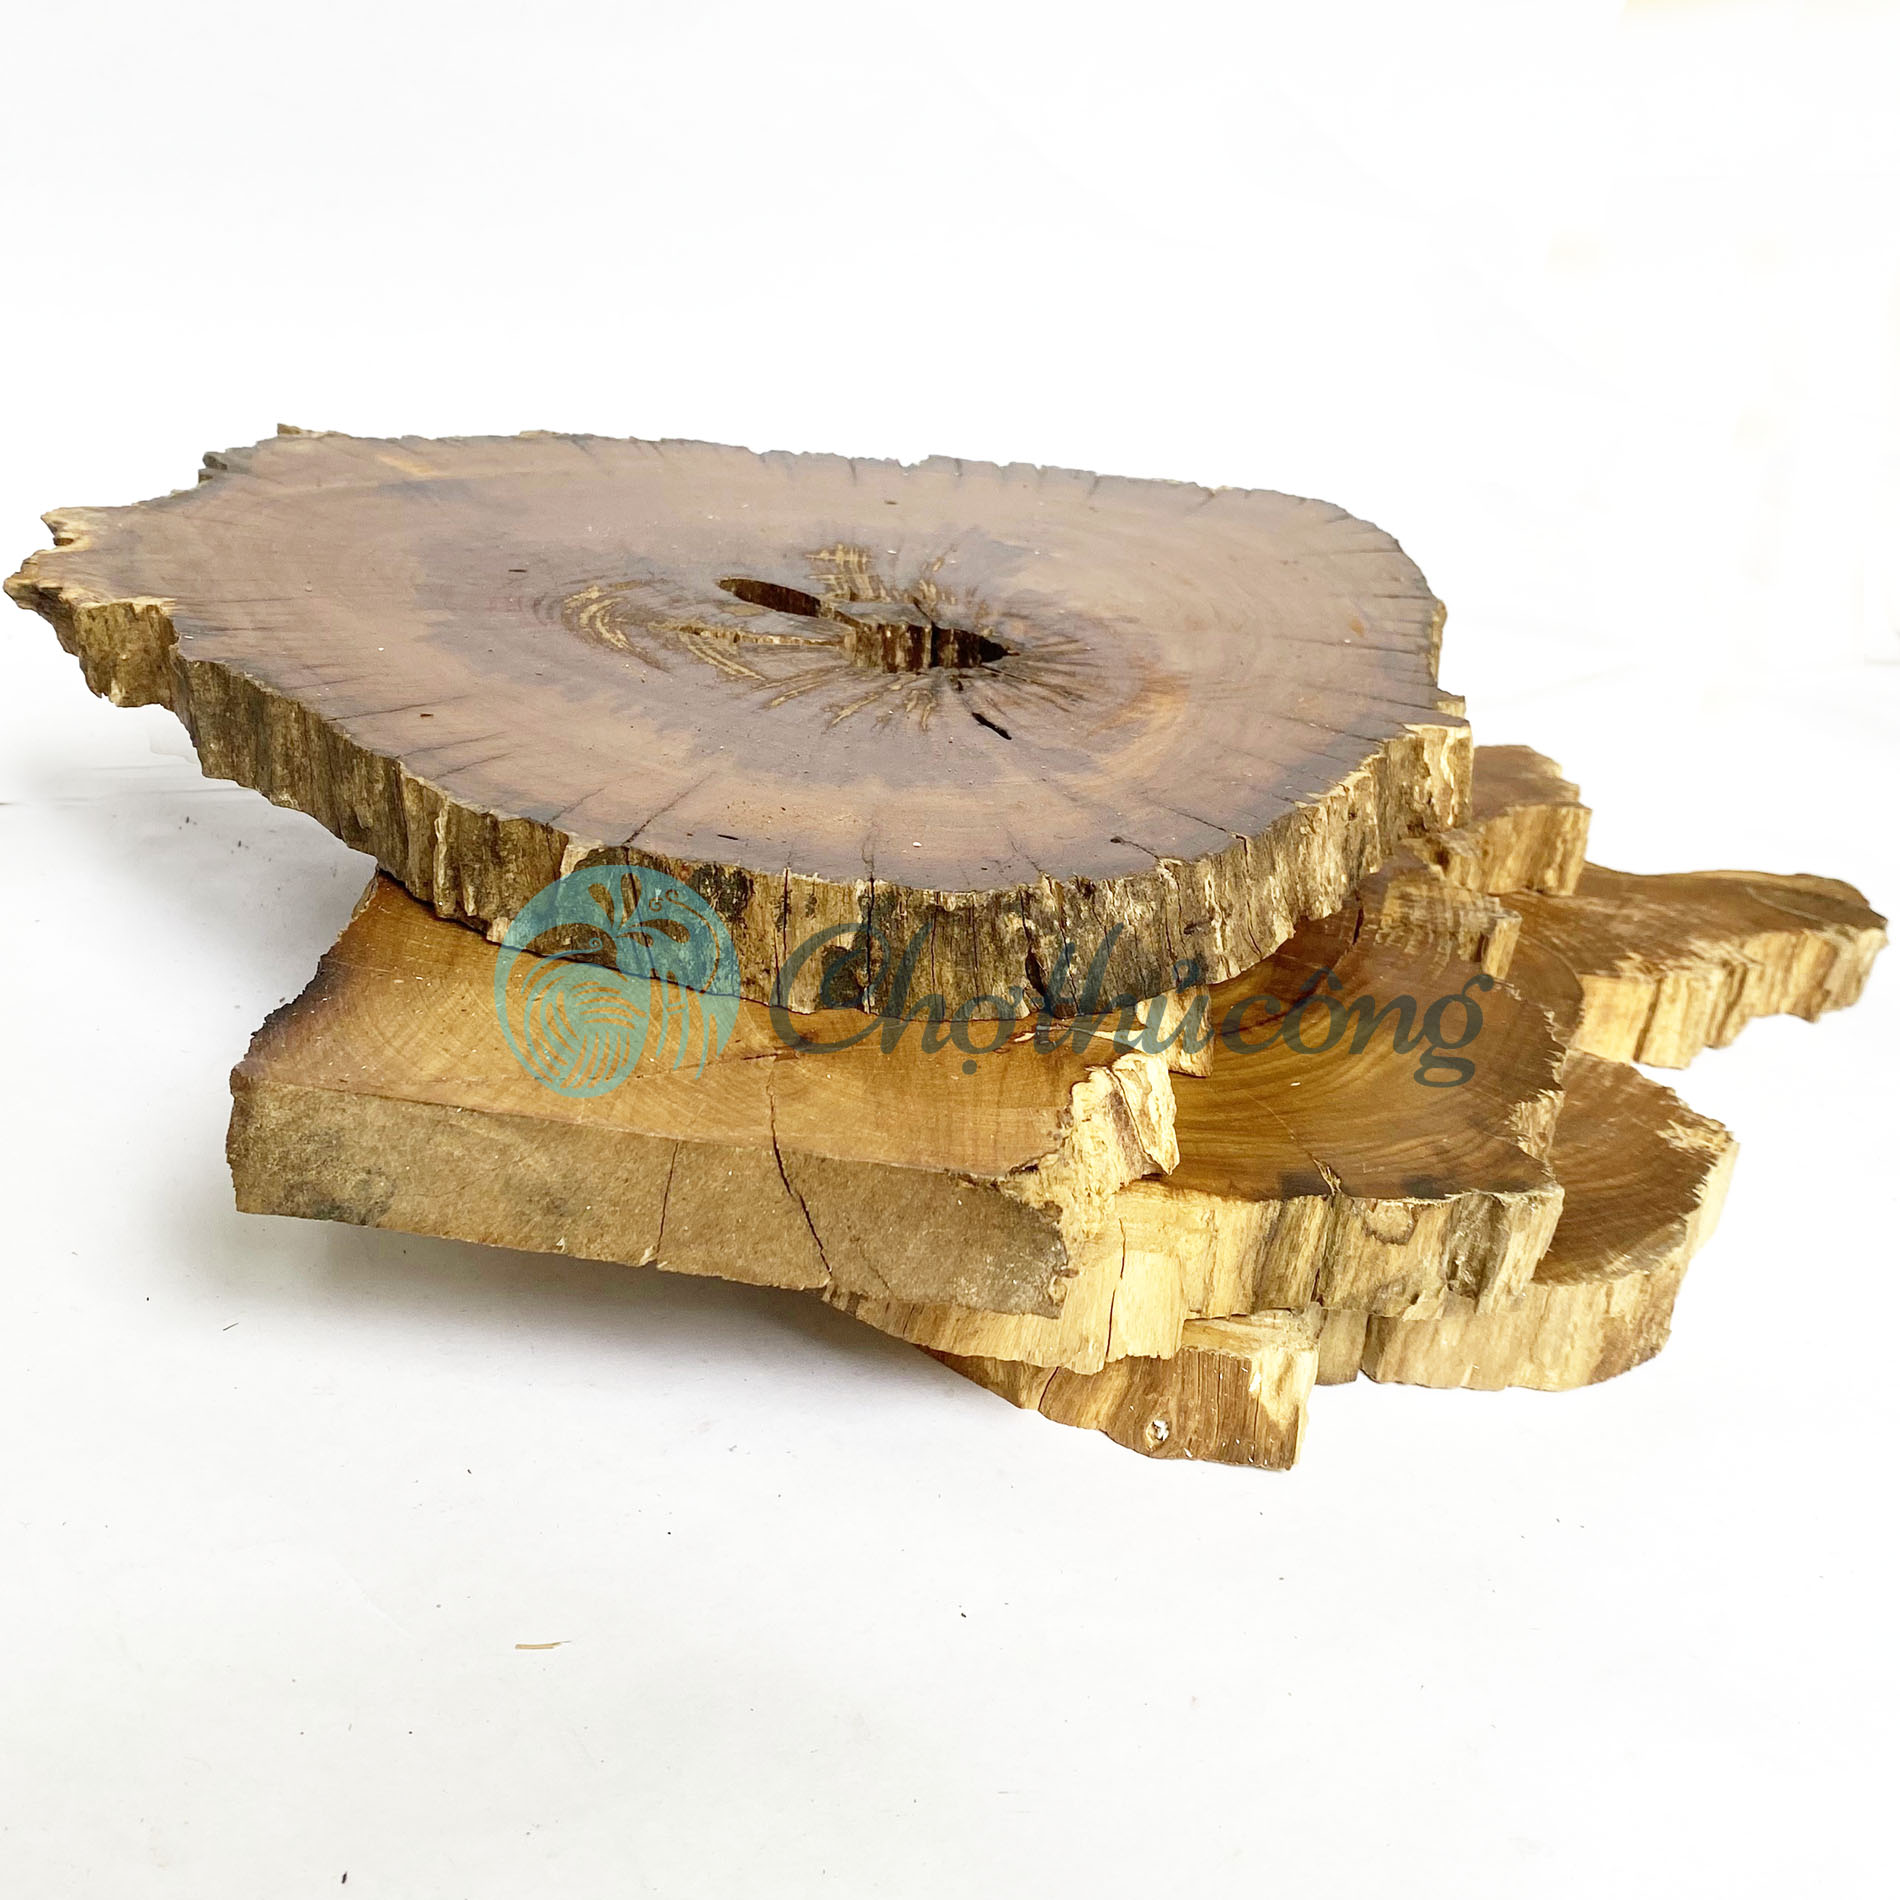 Khoanh gỗ tự nhiên lót chậu cây 20-25cm, lát gỗ lũa decor làm đế chậu cây, đế làm tháp bánh, đế gỗ kê tượng, miếng gỗ decor